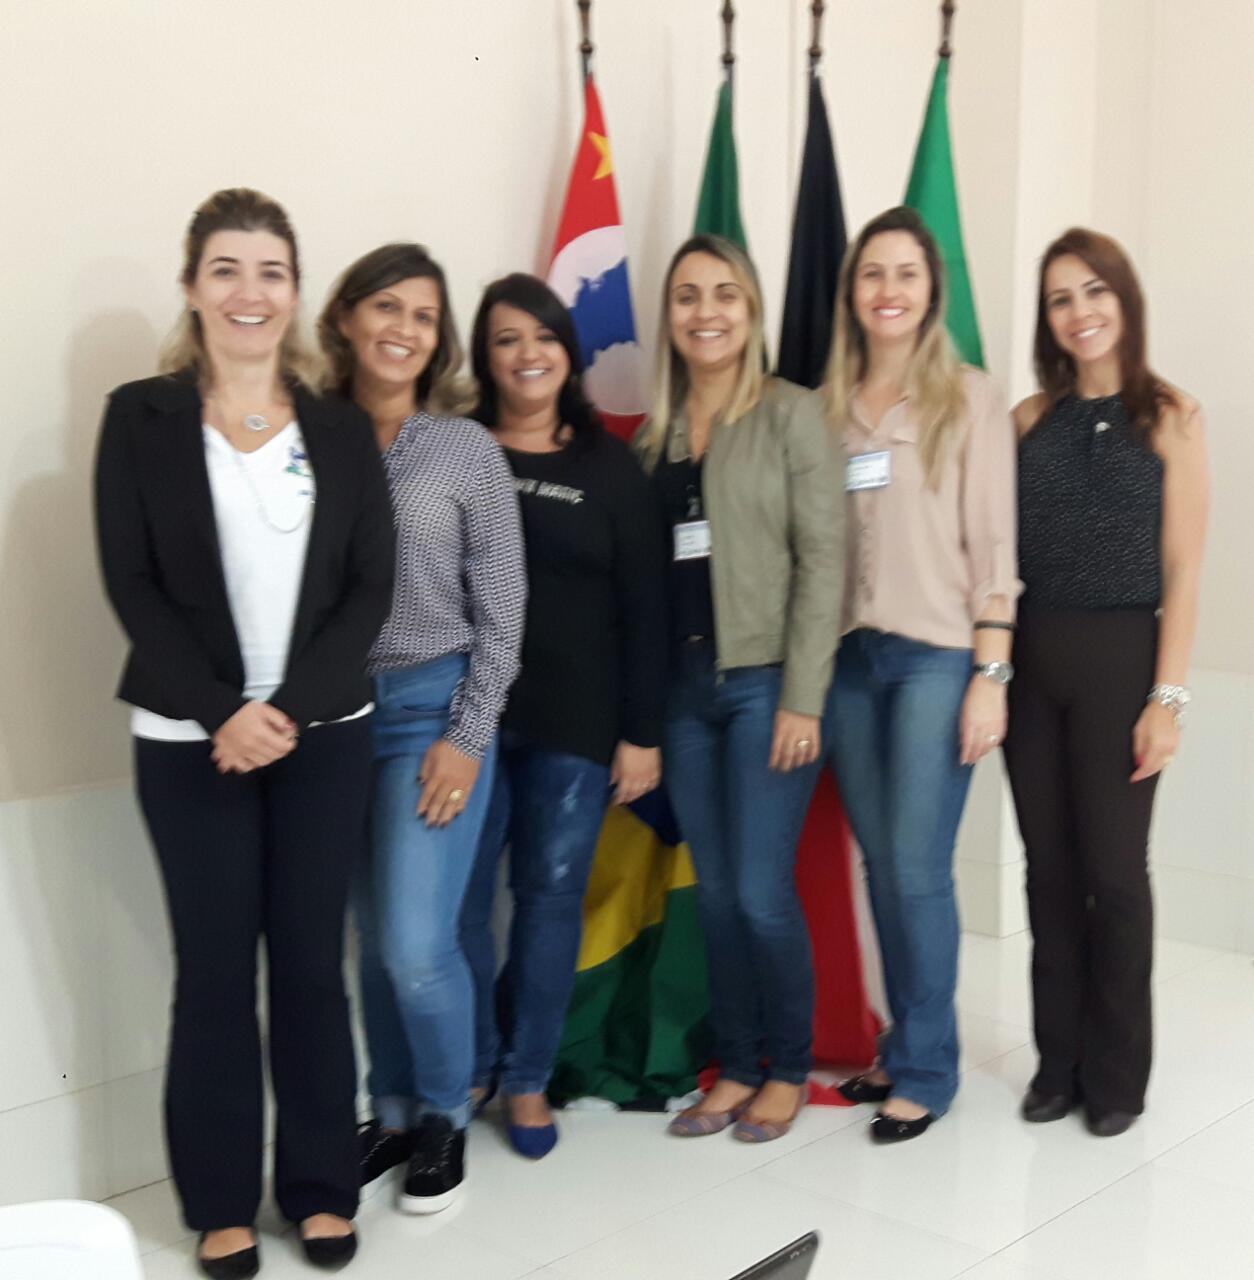 Da esquerda para direita: Anna Paula de Lima, Soraia Ferreira, Daniele Bastos, Sabrina Melo, Juliana Pichelli e Alessandra Marçal